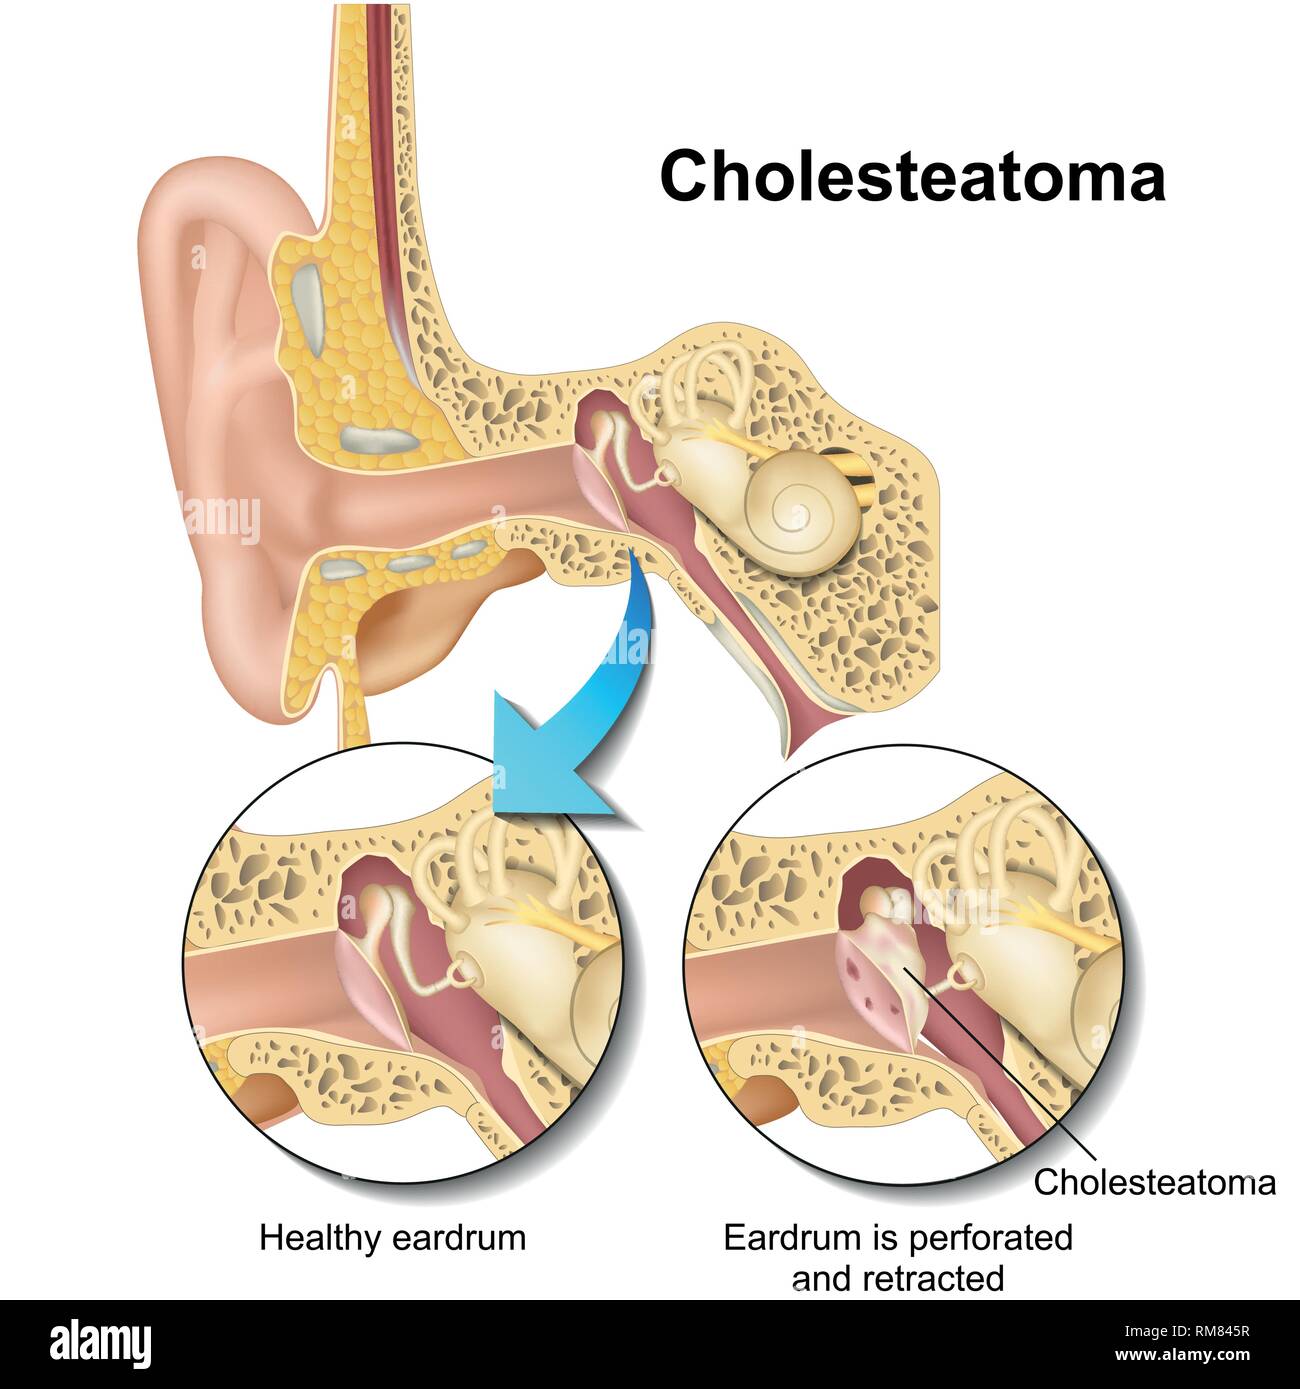 Cholesteatoma menschliche Ohr Anatomie Vektor illustraton auf weißem Hintergrund Stock Vektor